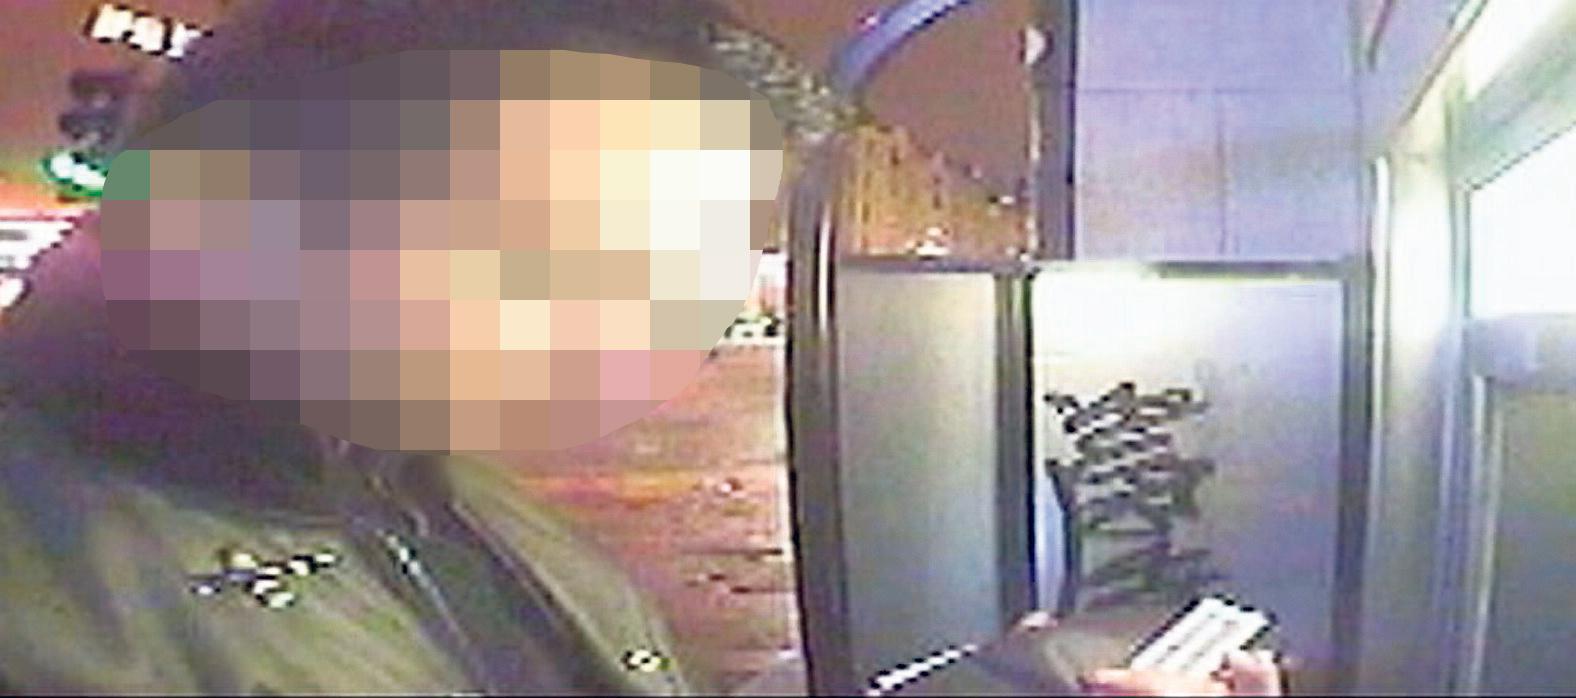 Finns på film Mannen som rånat flera bankomater har inte dolt sitt ansikte. Här fångas han av en övervakningskamera.